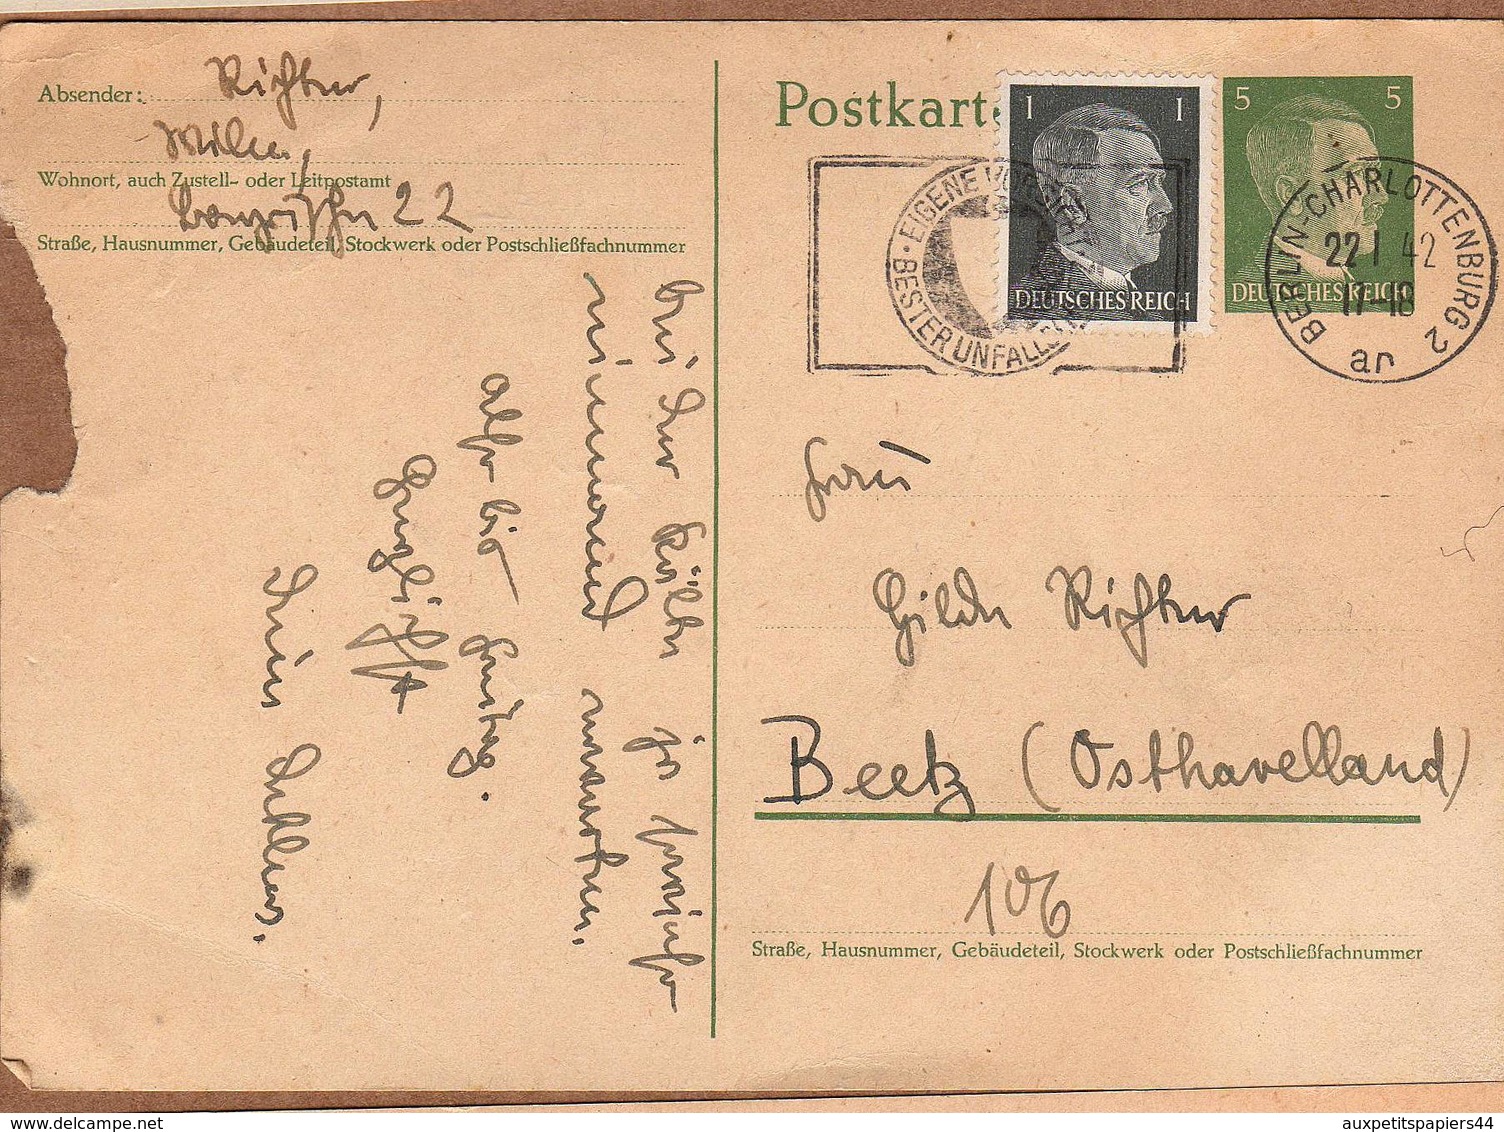 Lot de 24 CPA Lettres avec Timbre et Cachet avec correspondance Allemande de 1900 à 1960 - DDR - Deutschland